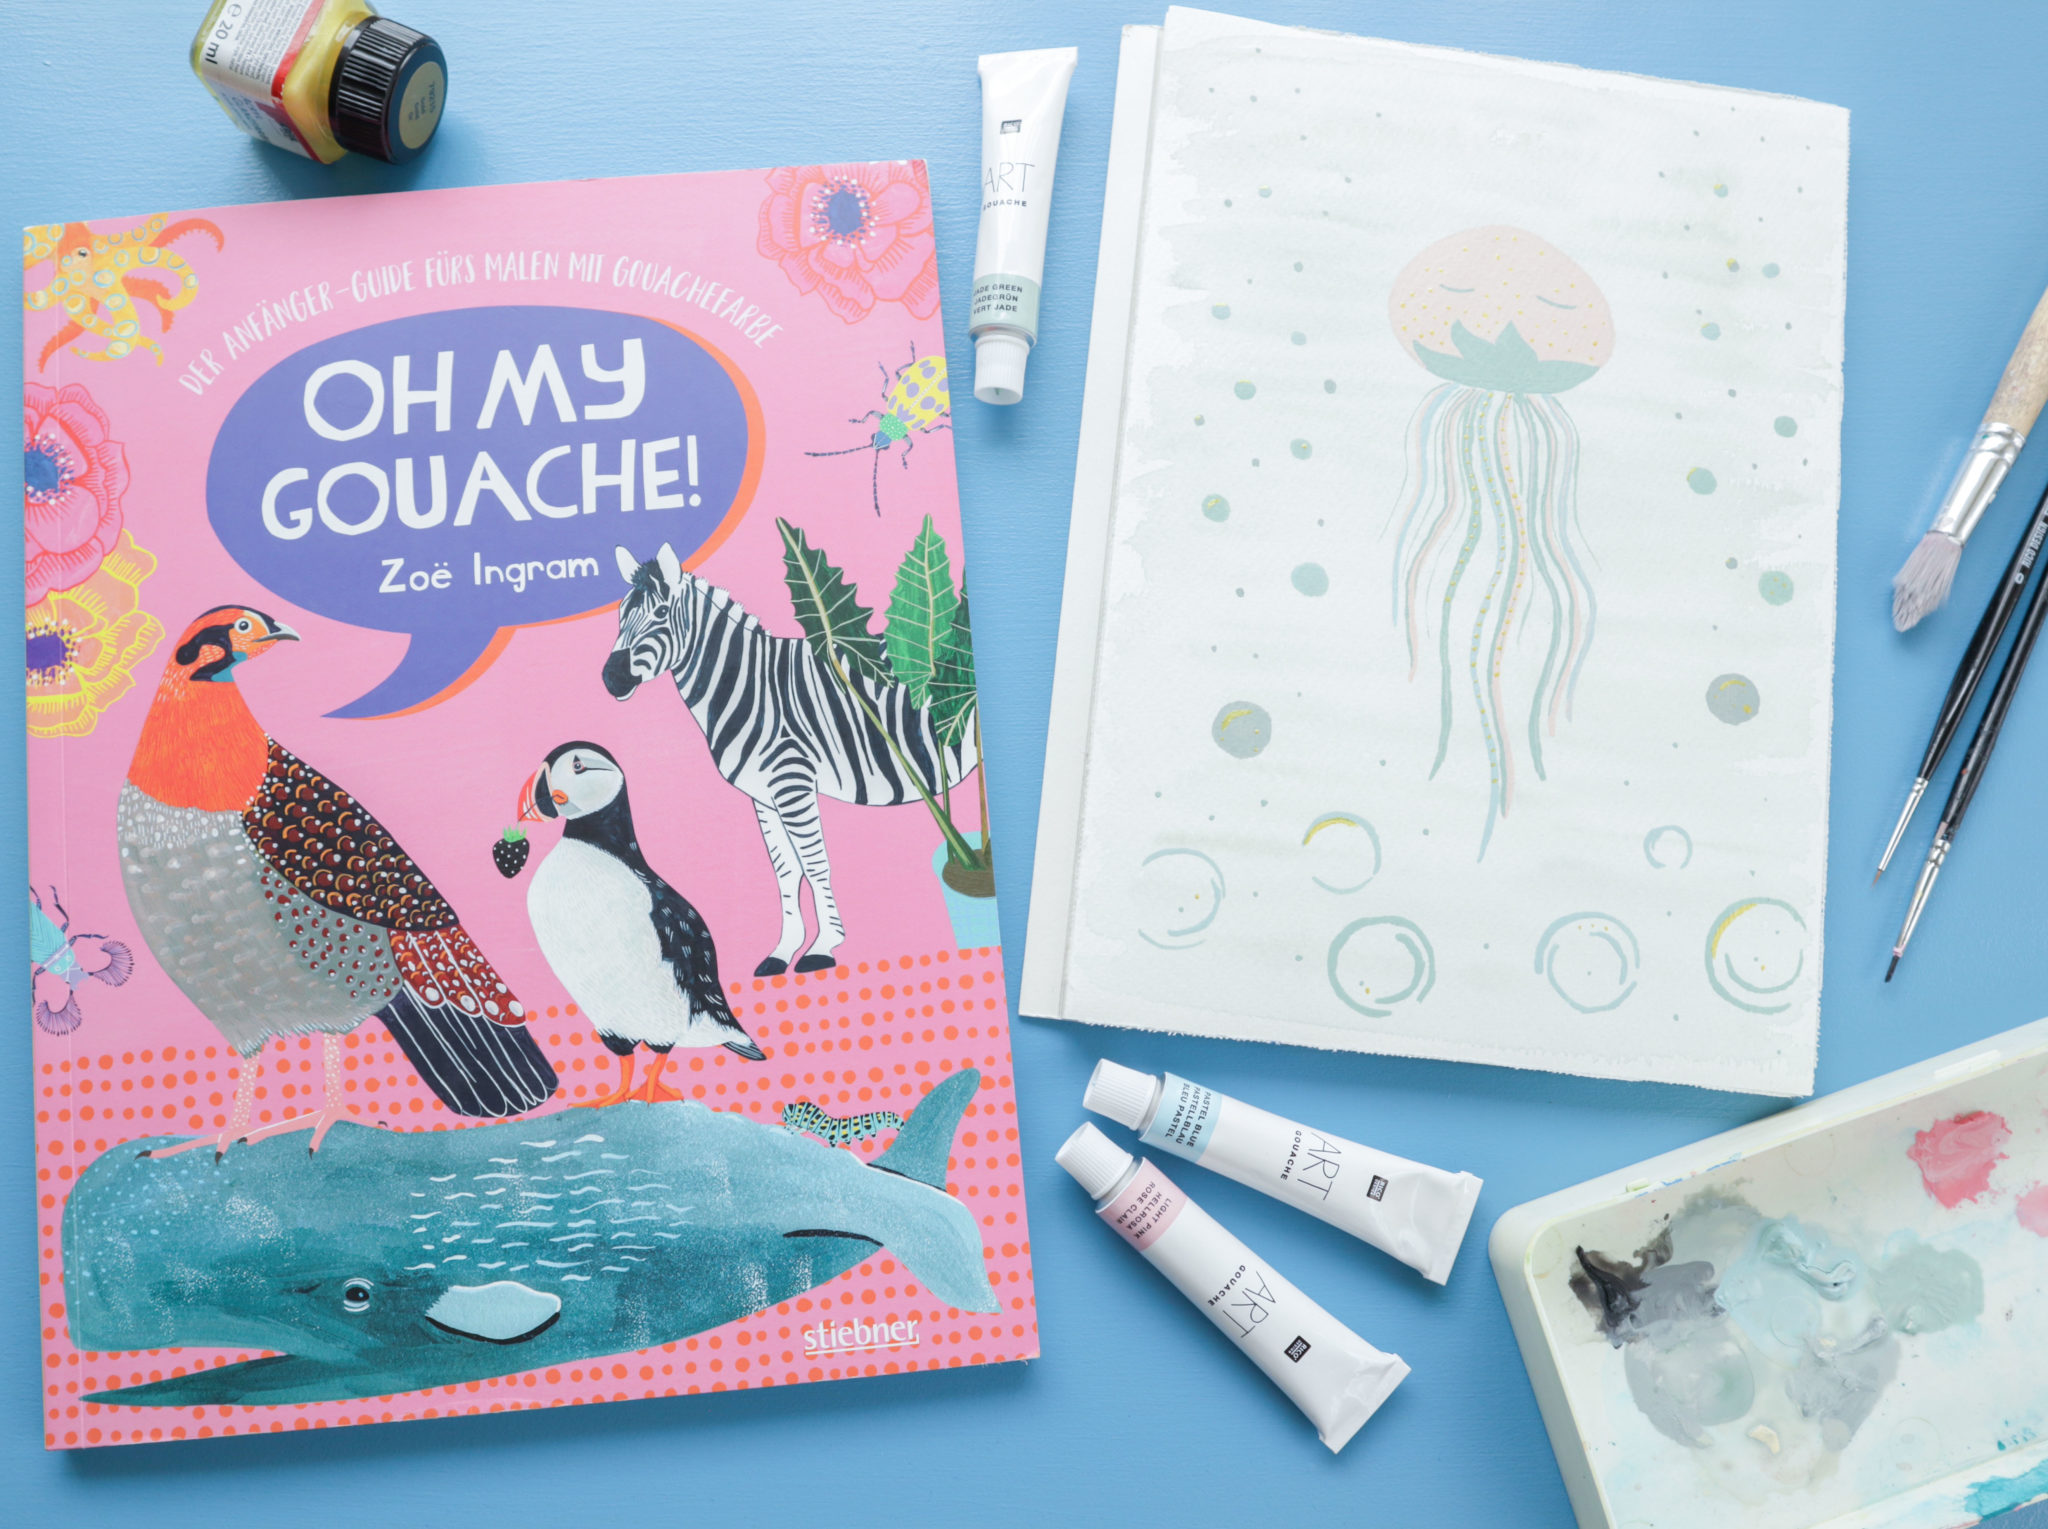 Das Cover des Buches 'Oh My Gouache' von Zoë Ingram' sowie ein von mir gemaltes Bild eines Mischwesens aus Erdbeere und Qualle (Jellyberry), für dessen Umsetzung ich Anregungen aus dem Buch übernommen habe.